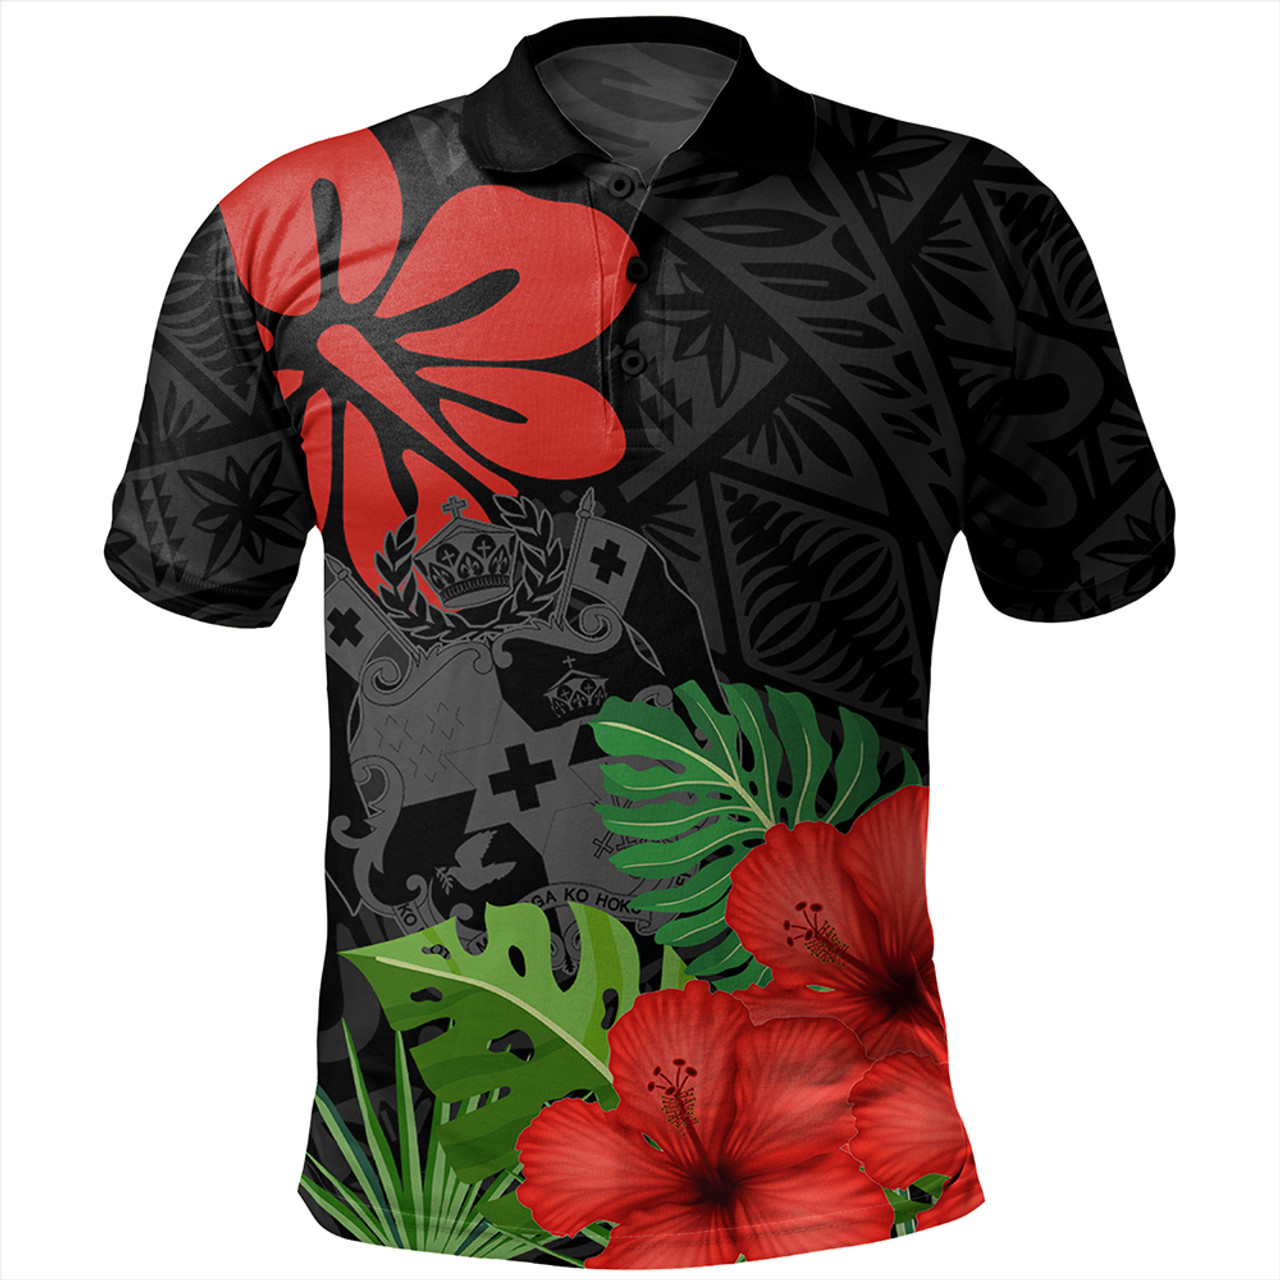 Tonga Polo Shirt Tonga Coat Of Arms Polynesian Hibiscus